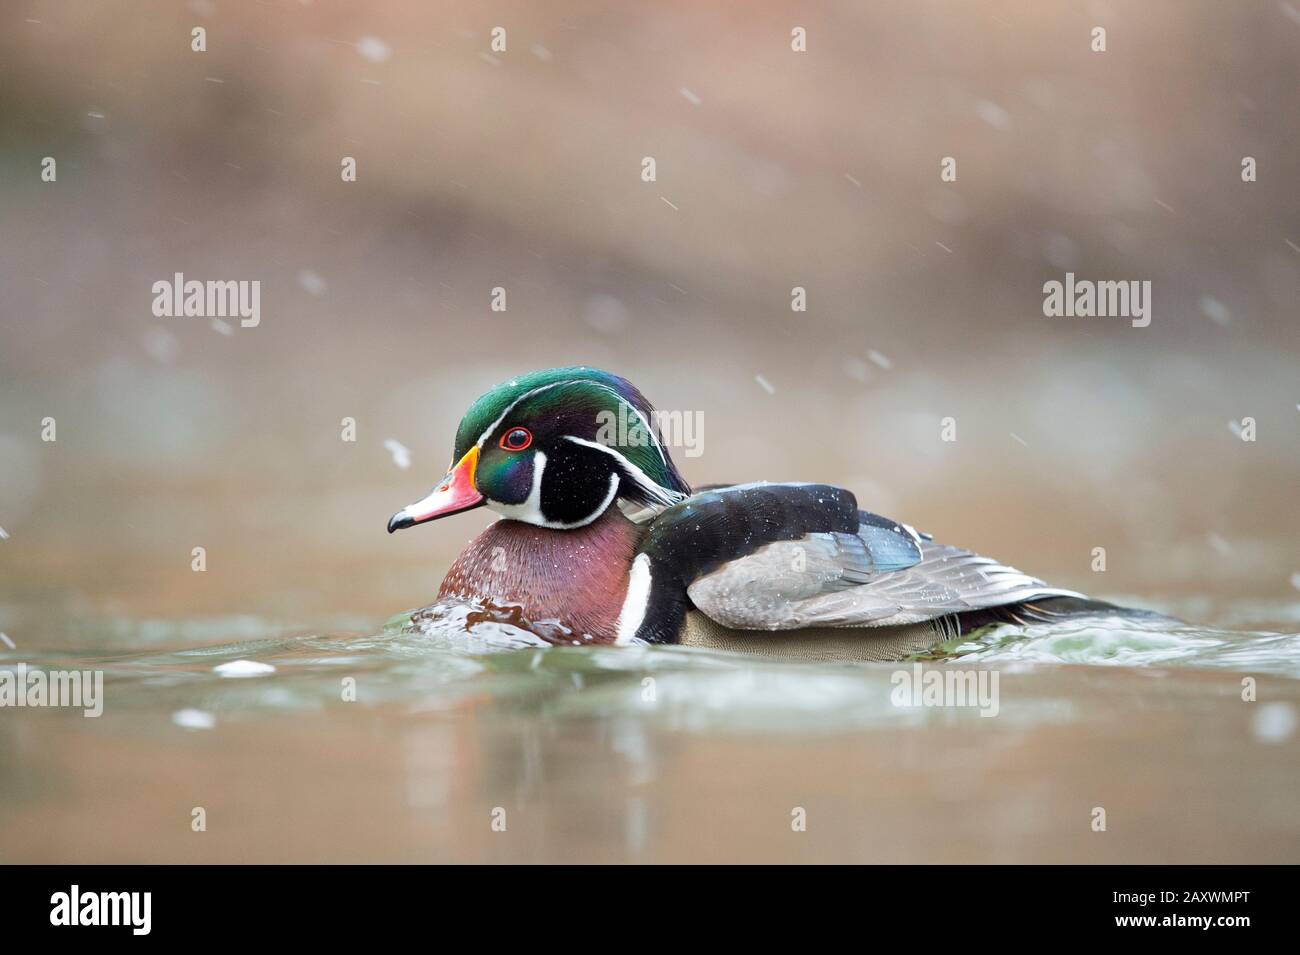 Coloratissimo Duck di legno maschile nuotare in acqua in caduta di neve in una fredda giornata invernale. Foto Stock